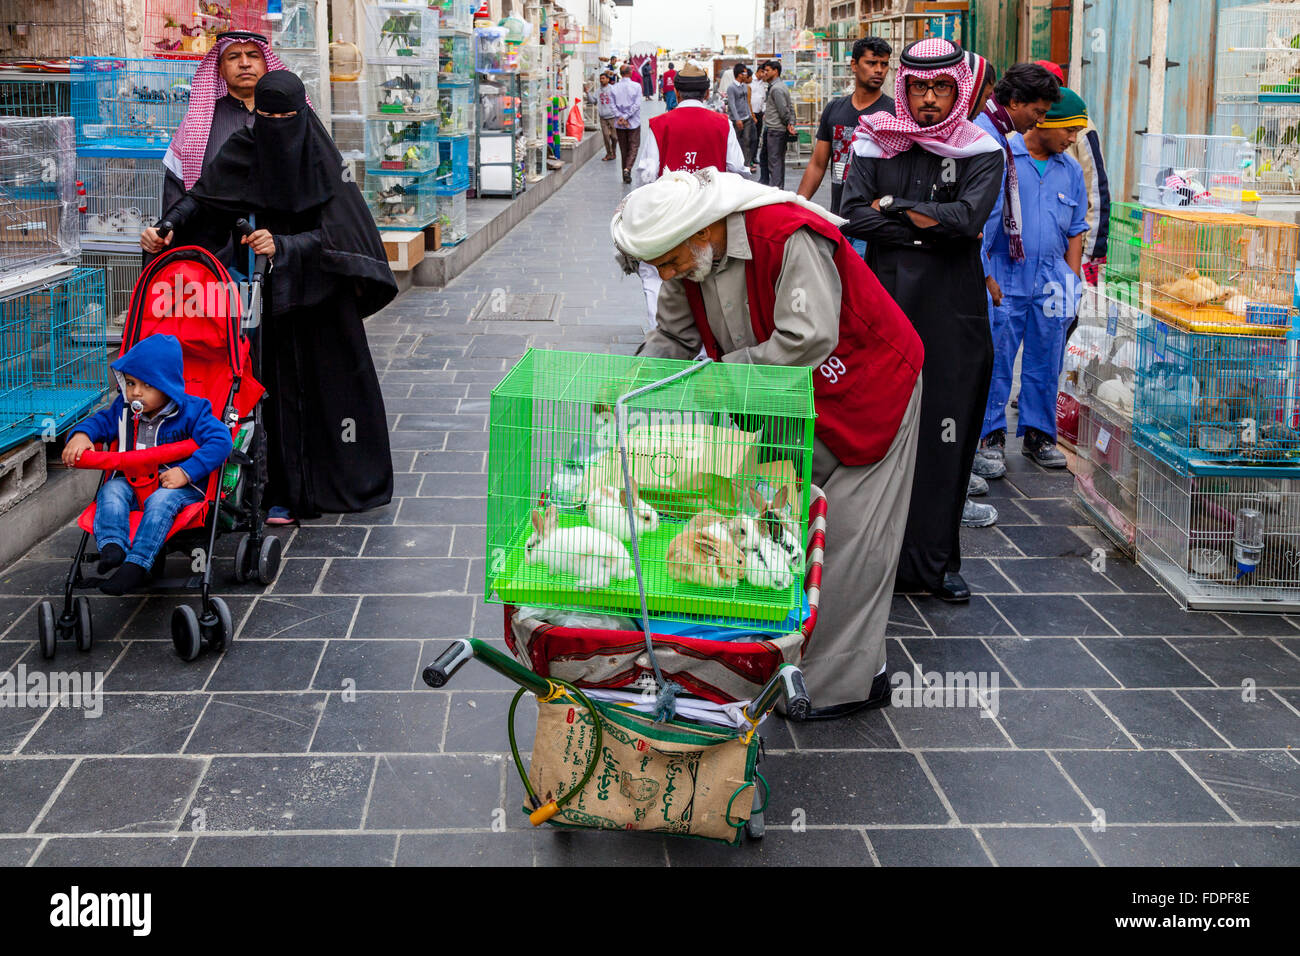 Ein Markt-Porter bereitet, eingesperrte Tiere für einen Kunden, Souk Waqif, Doha, Katar zu transportieren Stockfoto